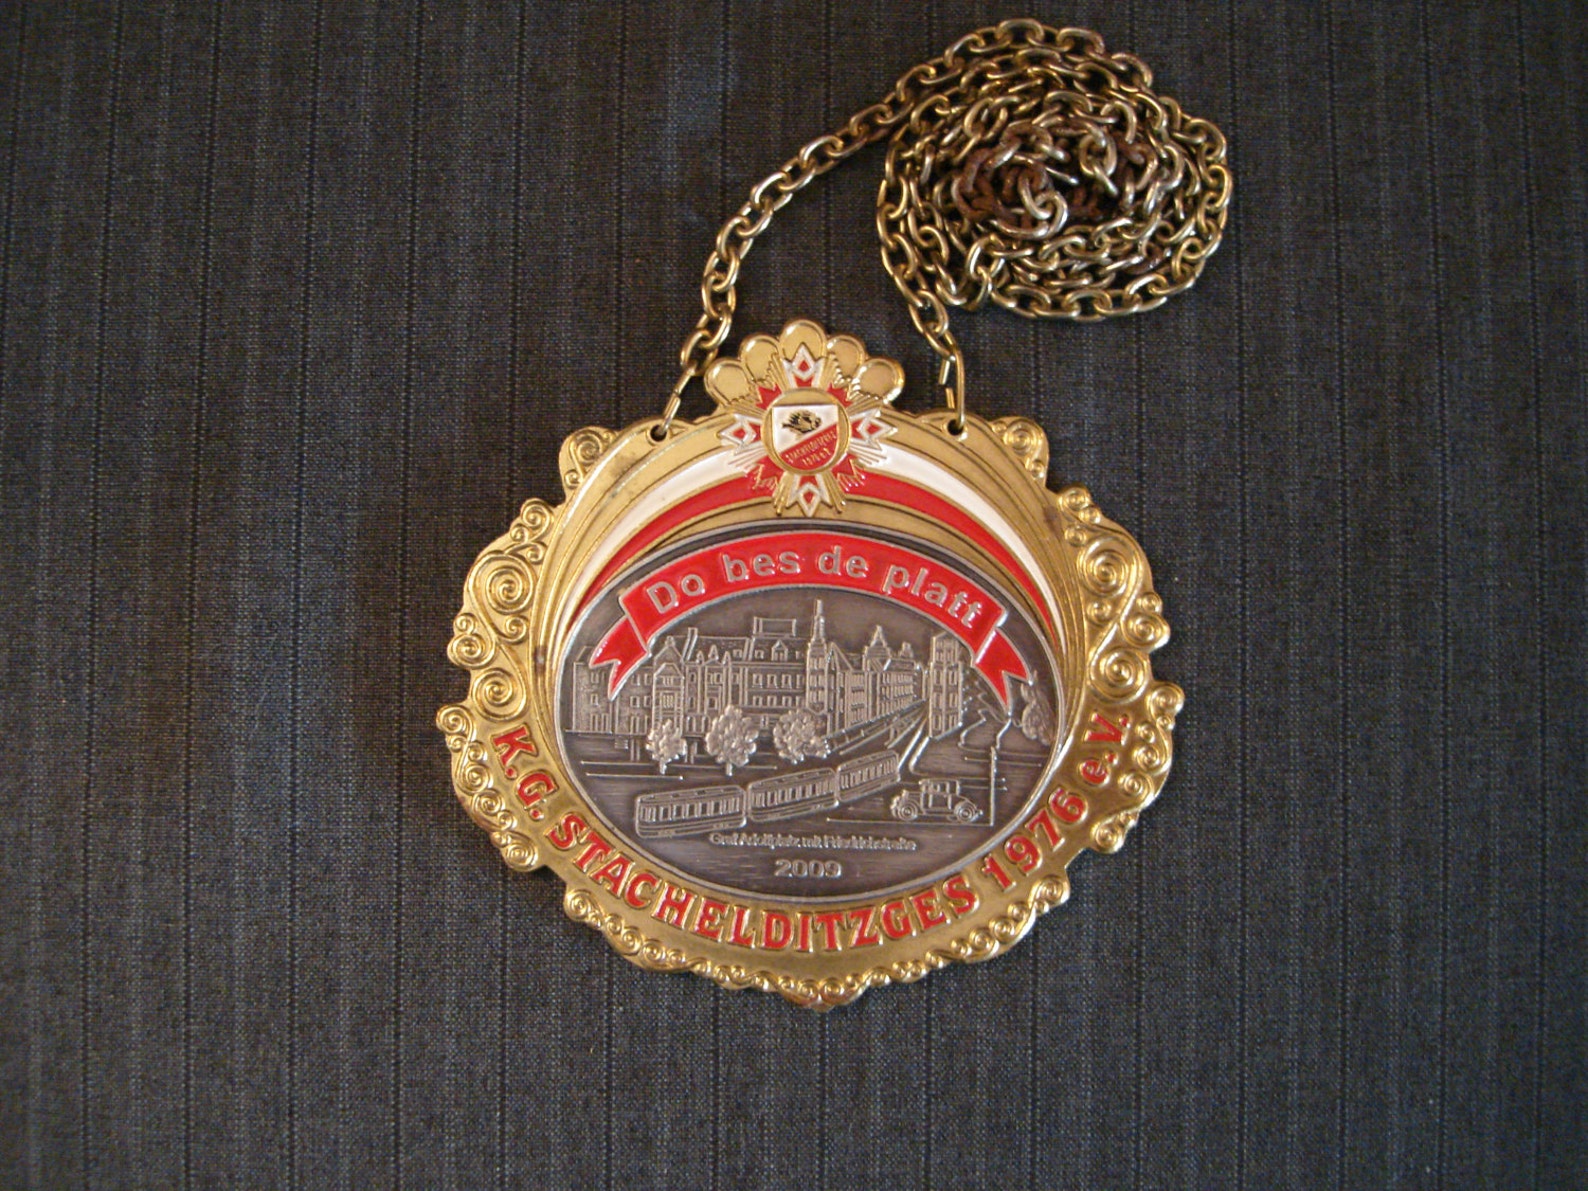 German Carnival Medal, Do bes de platt, K.G. Stachelditzges e.V. 1976 - 2009 [Vintage]